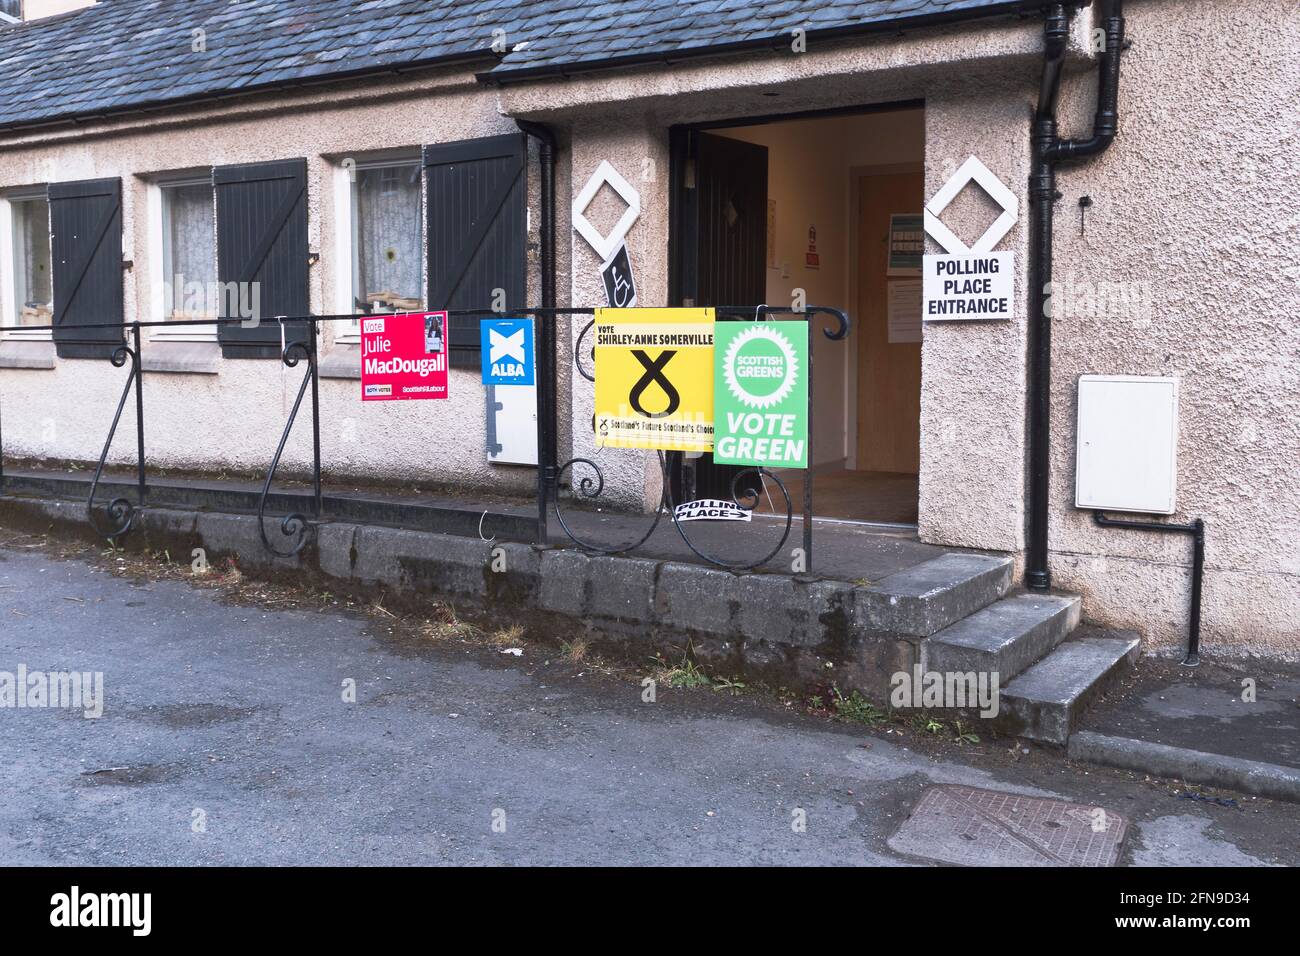 dh Scottish Polling Station SCHOTTLAND UK Eingang zu Umfrage Tag Stationen politisches Plakat Zeichen Fife Wahl 2021 Politik Stockfoto